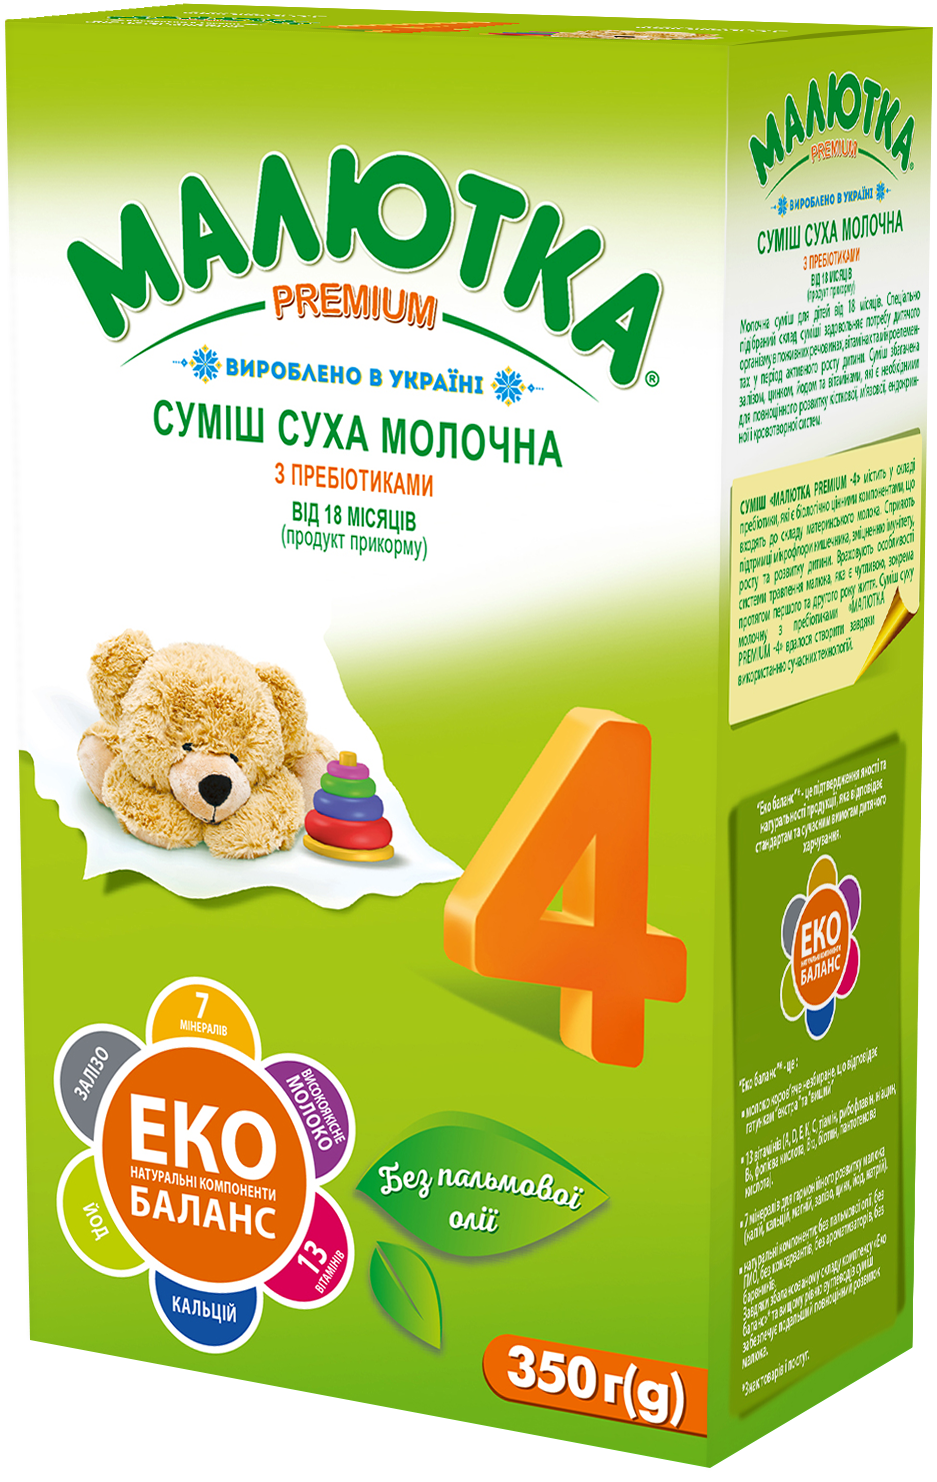 Суміш суха молочна з пребіотиками для харчування дітей від 18 місяців (продукт прикорму)